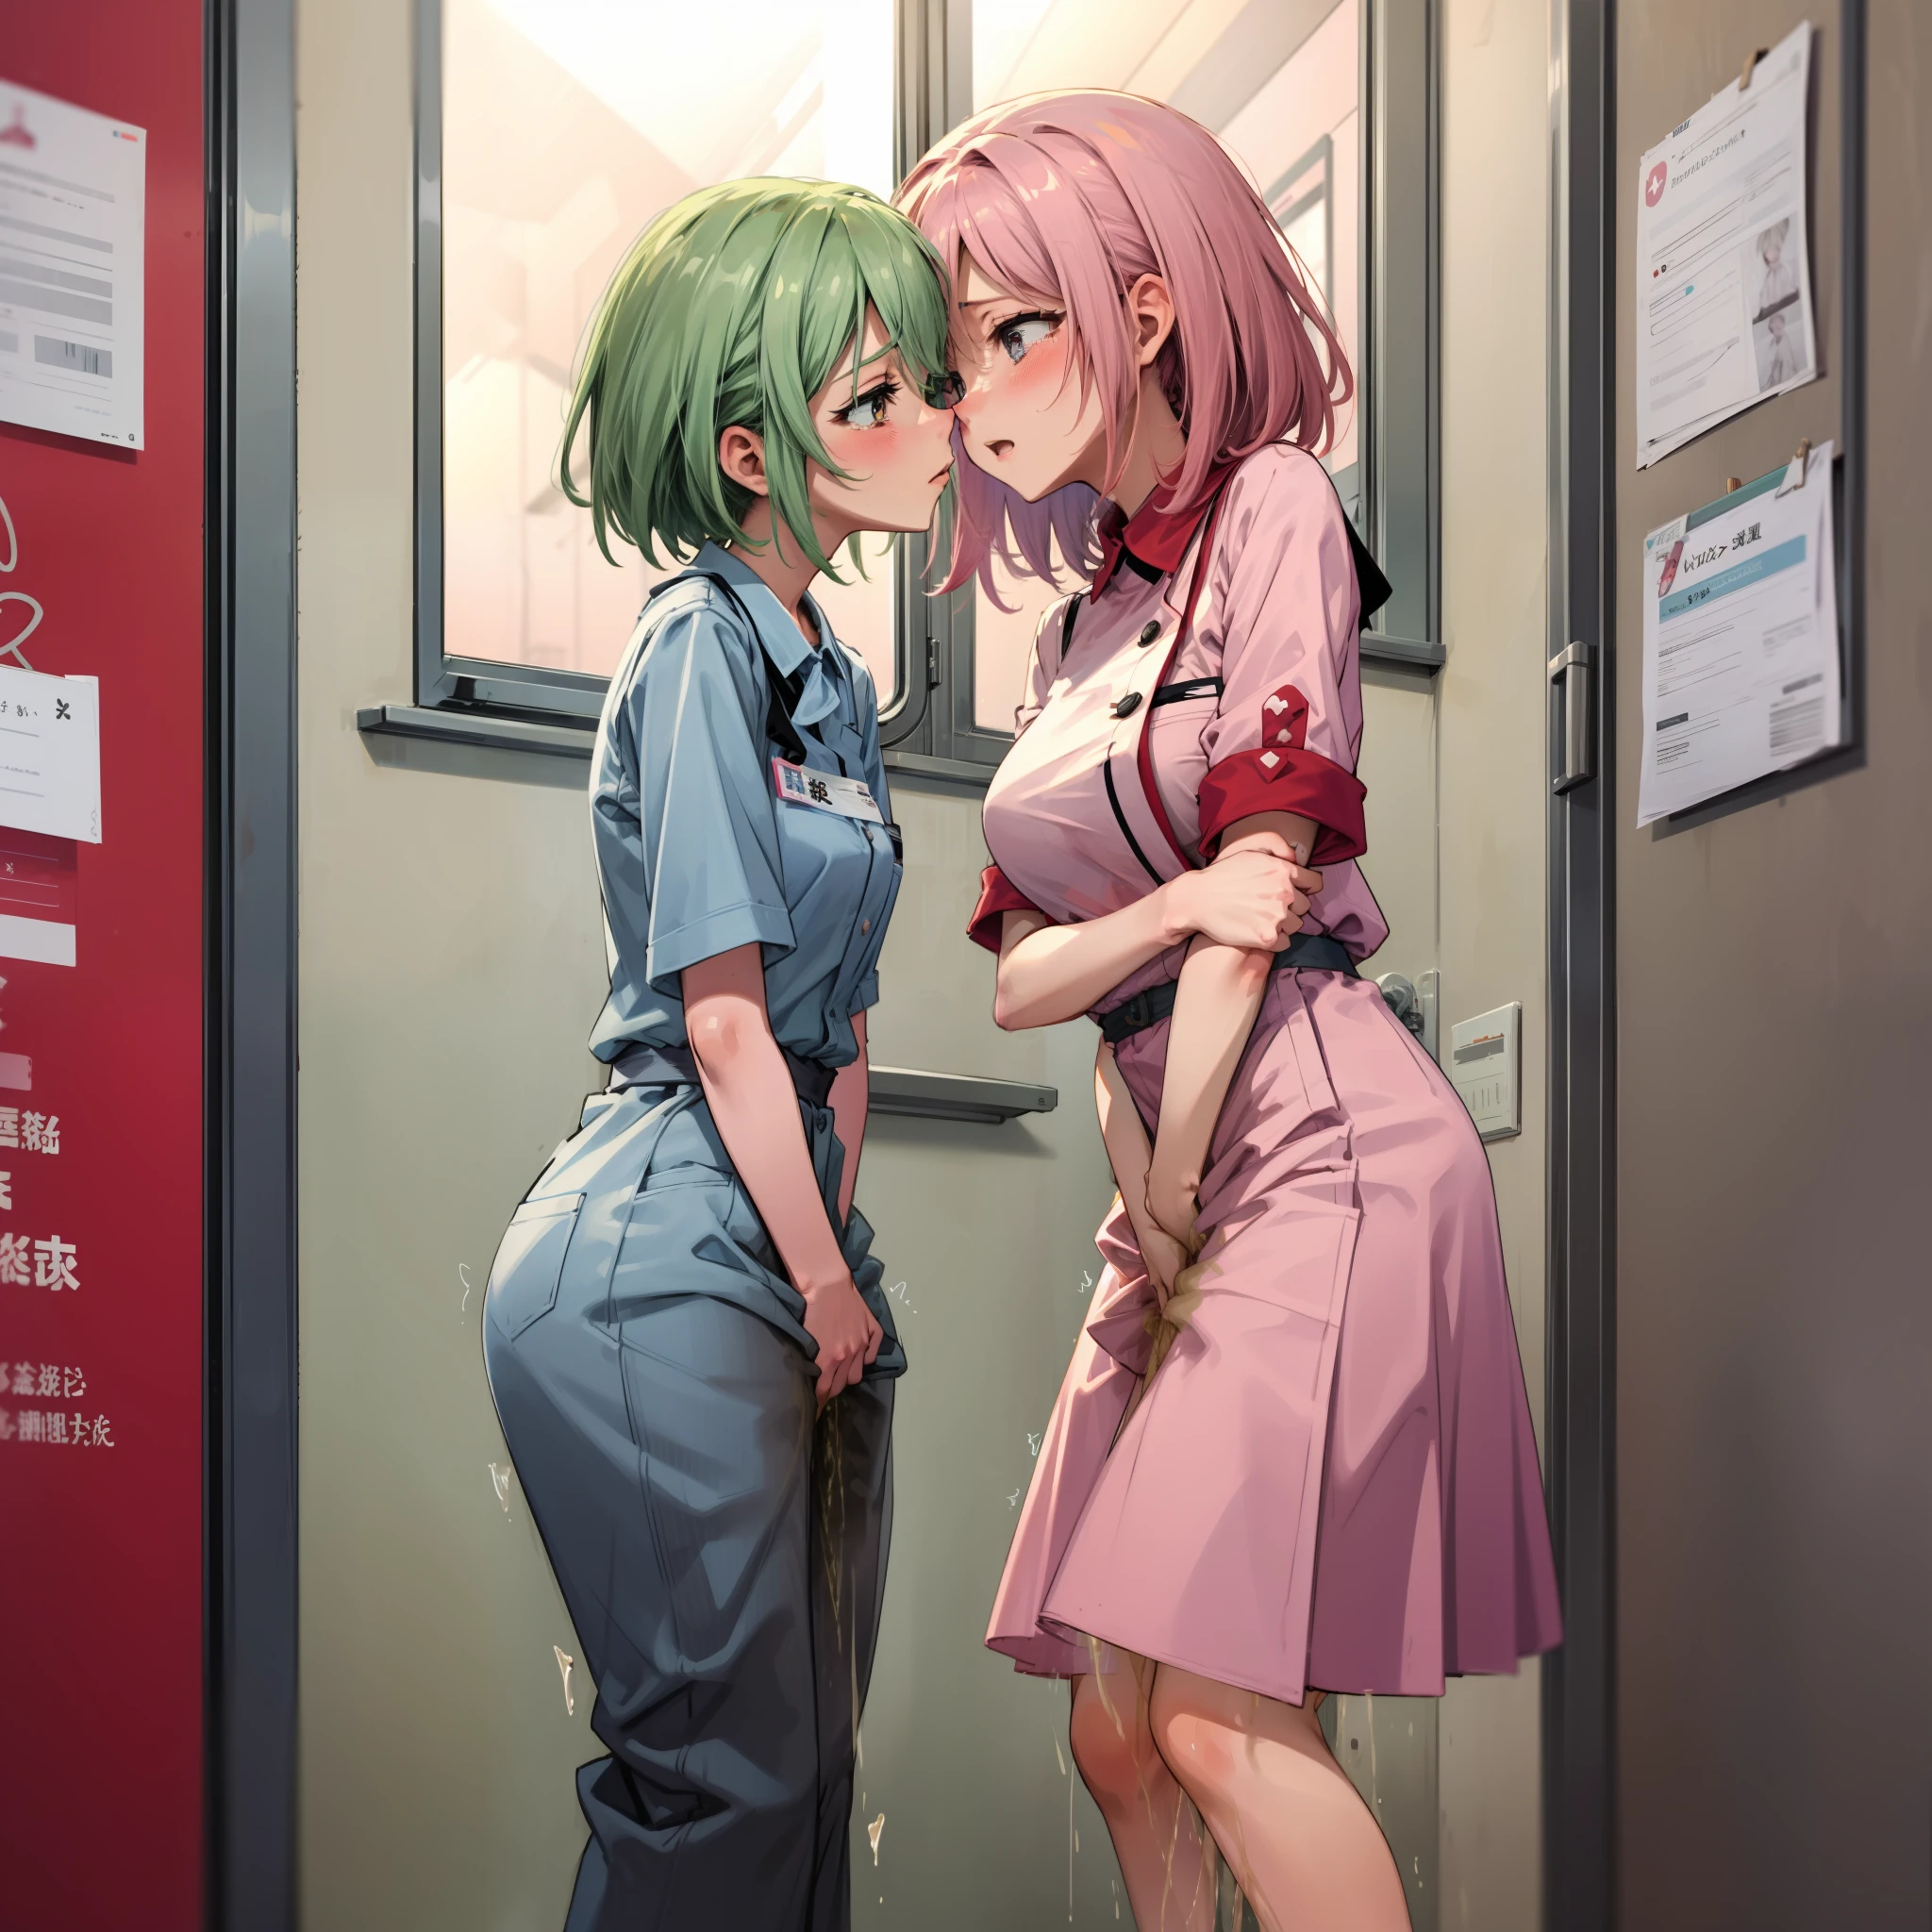 Duas enfermeiras se divertindo na sala de exames、Ato de metamorfose de Mika lésbica、Obsceno、lágrimas、olhar desesperado、blush vermelho、seios discretos、fazendo xixi sozinha、o beijo